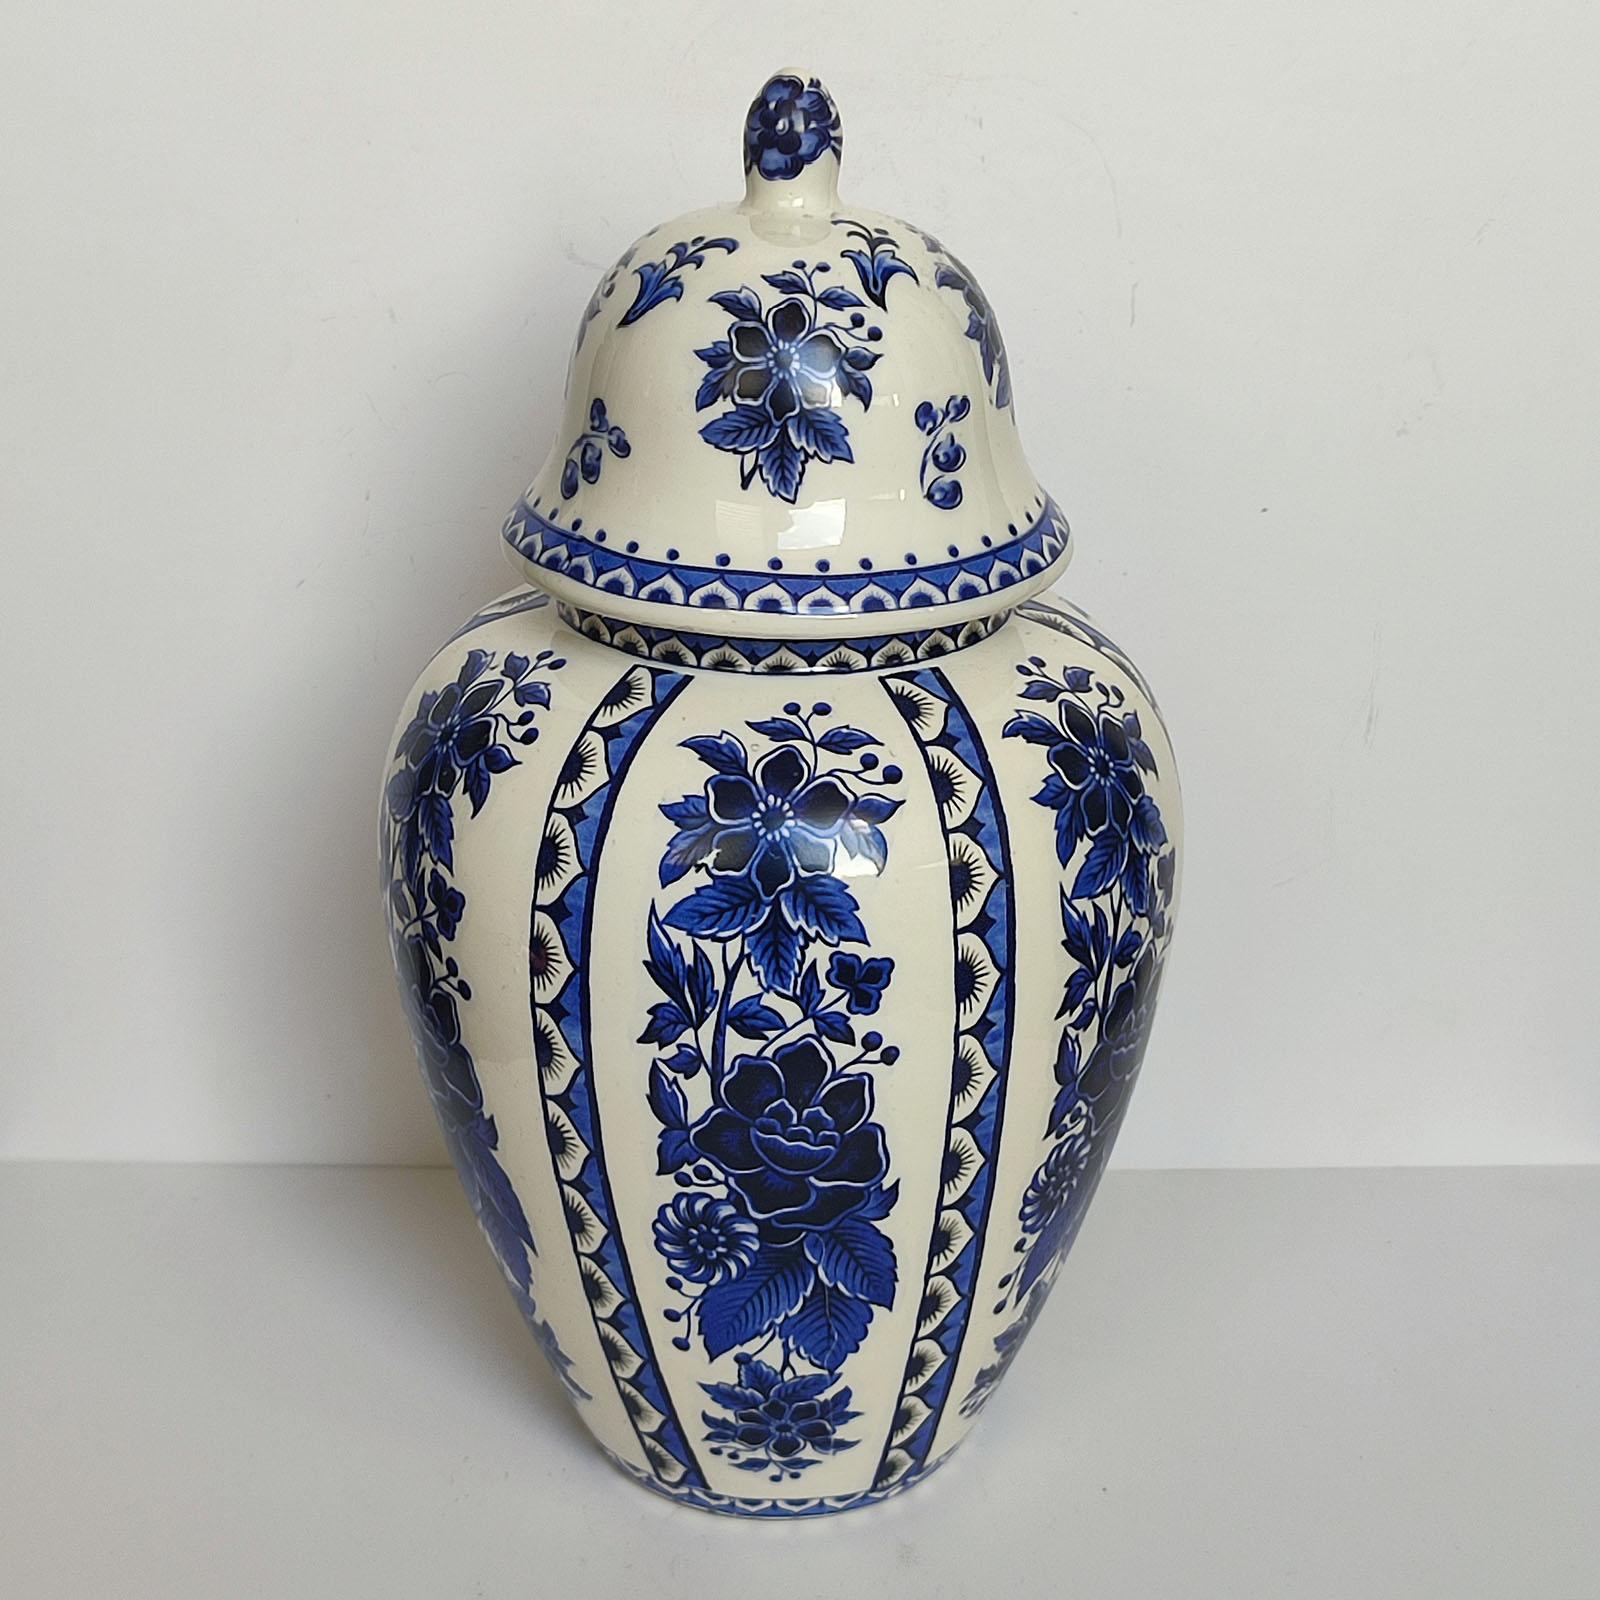 Grand vase Delft vintage avec couvercle, milieu du siècle, glaçure blanche avec décor bleu.
Vase couvert en céramique avec glaçure blanche et décor floral bleu. Marqué sous le fond Delft.
Hauteur 36 cm [14.2 in.]
EXPÉDITION GRATUITE par la poste,